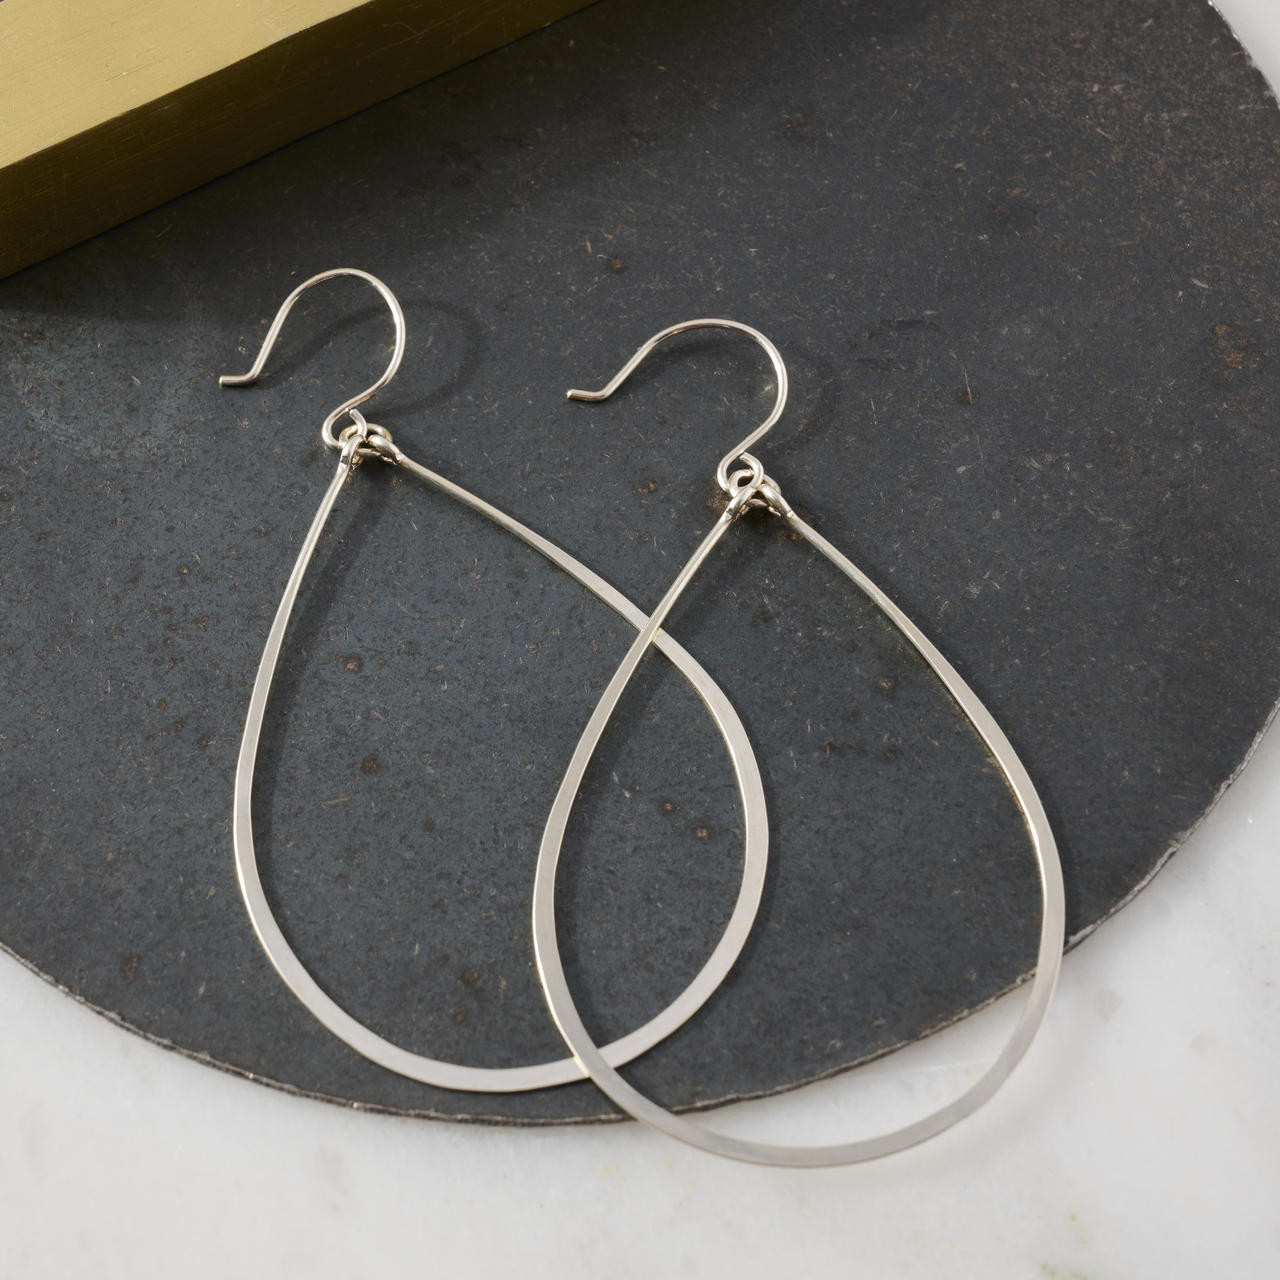 Silver hoop earrings - small, medium or large hoops - lightweight ster –  www.bigluvstudio.com